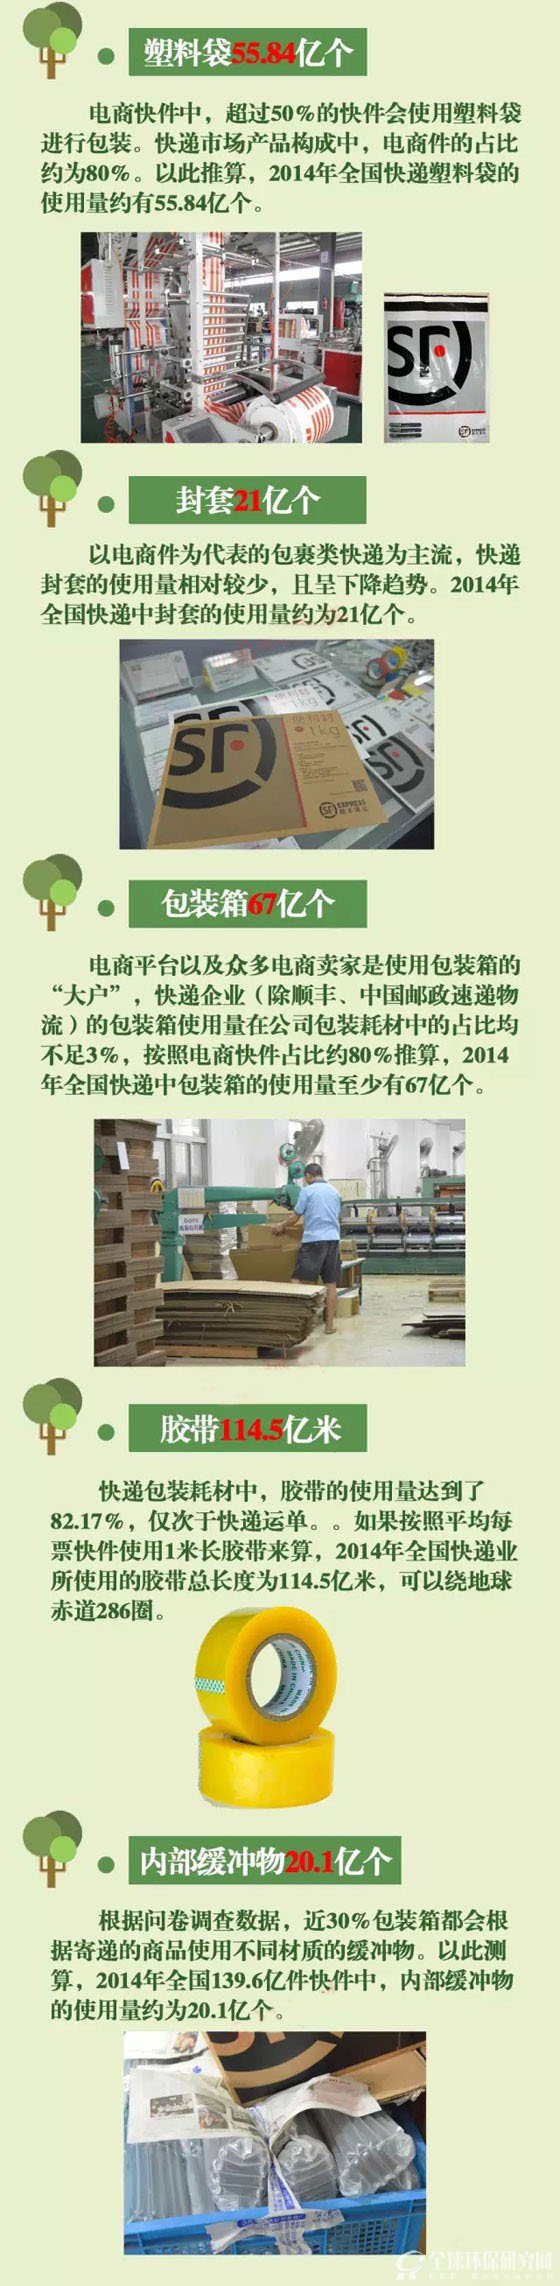 中国快递领域绿色包装发展现状及趋势报告2